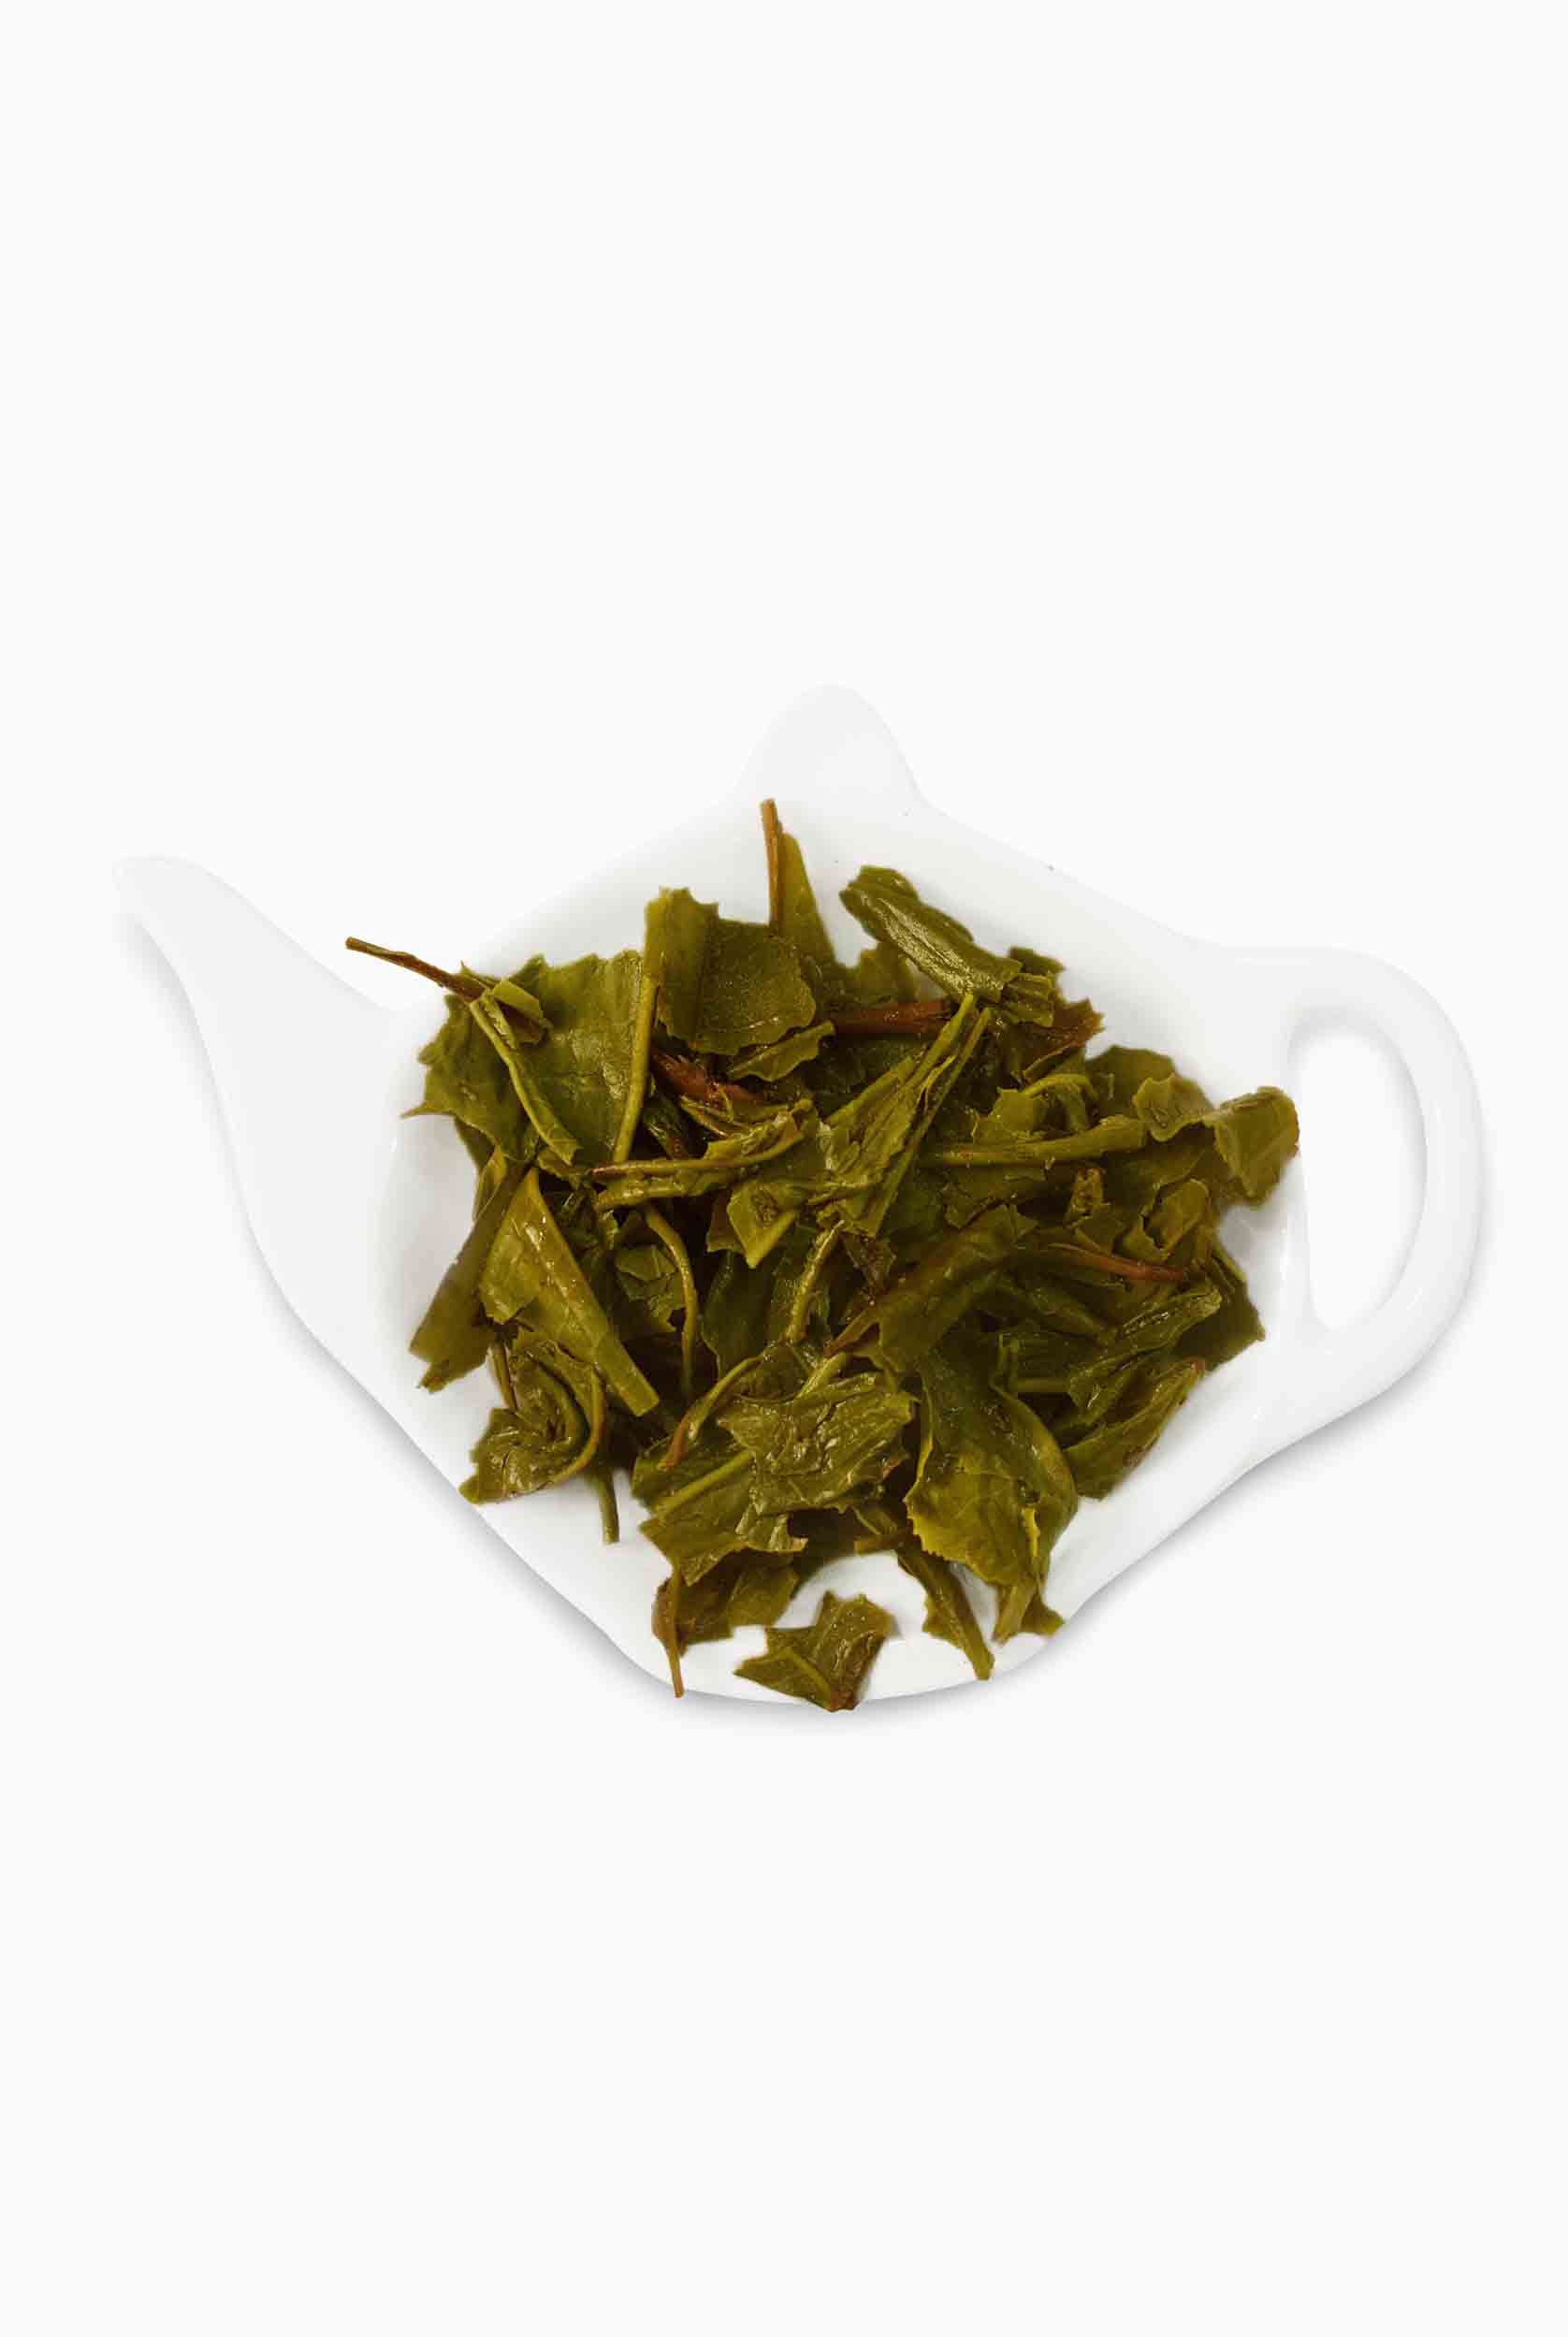 Pure Green Tea leaves, Green Tea Price, 